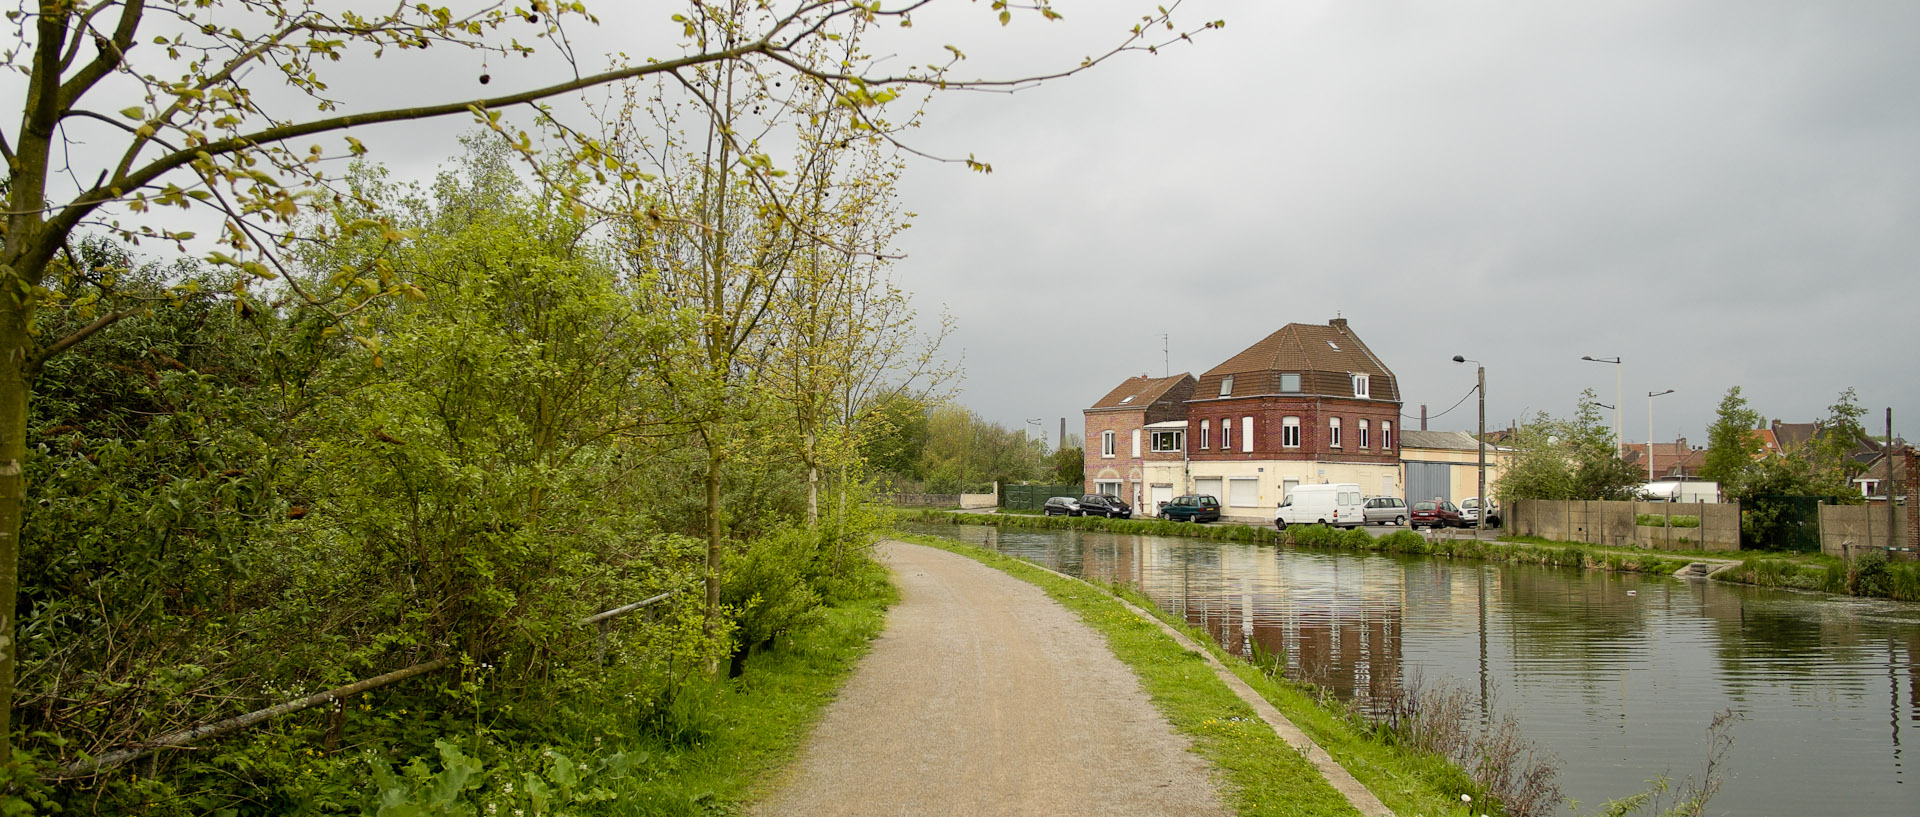 Le canal de Roubaix, quai du Sartel.